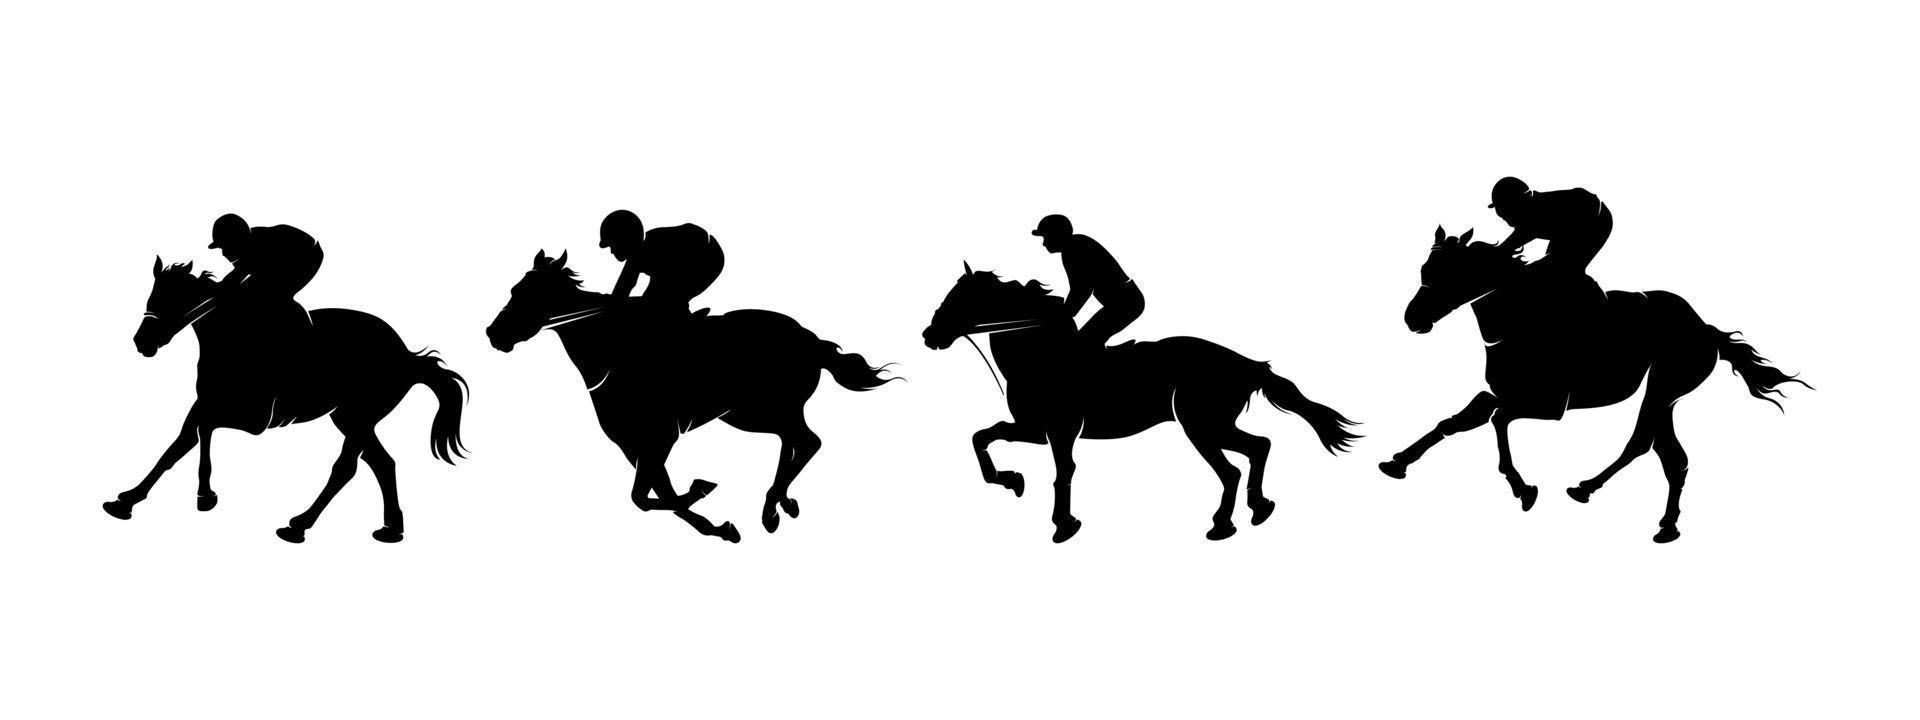 Colección silueta carrera de caballos vector